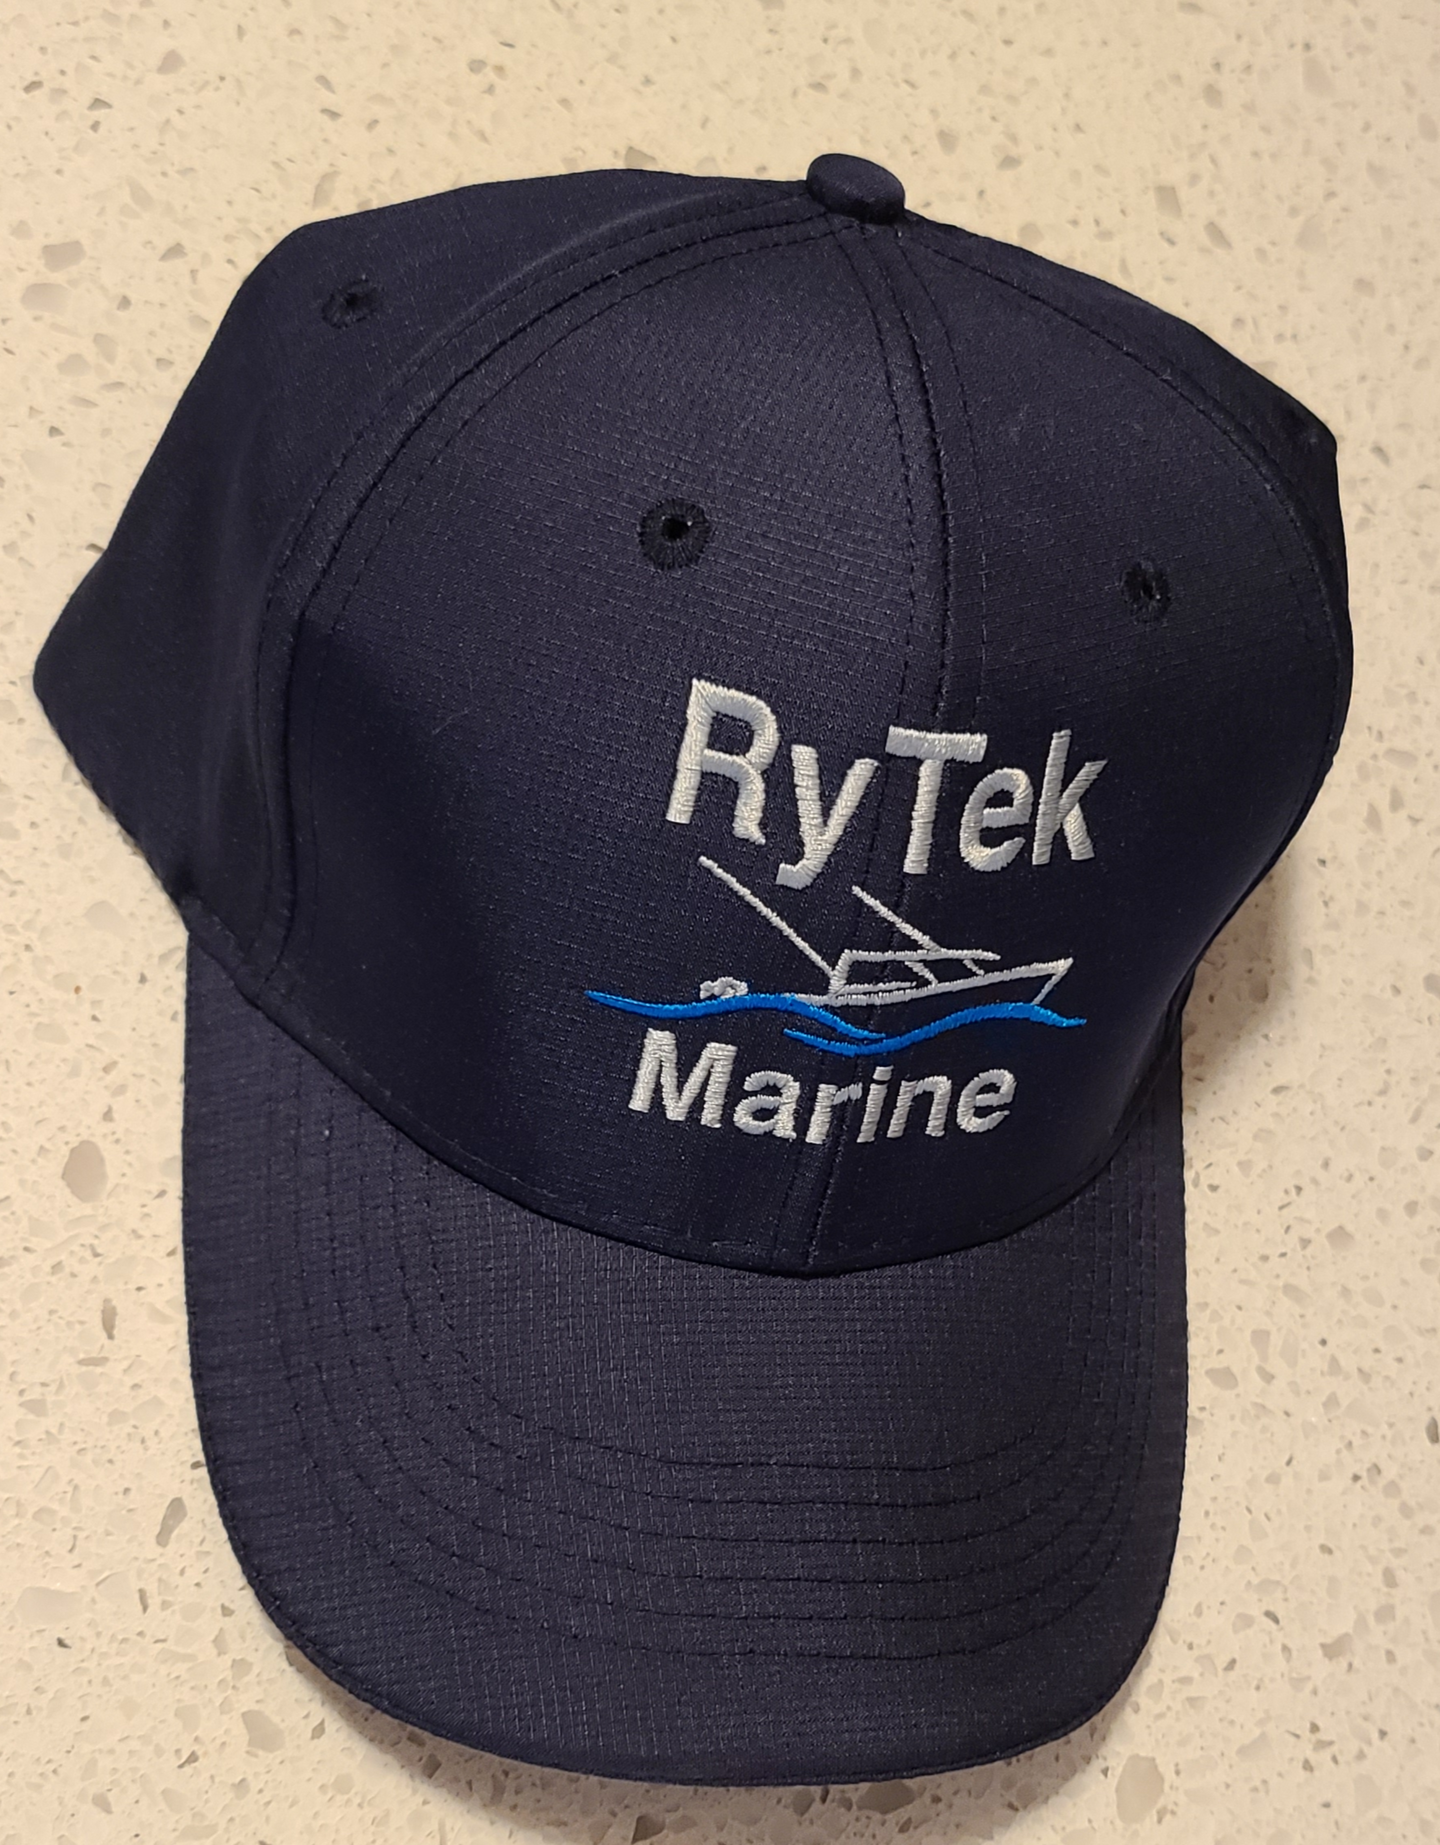 RyTek Marine Hats